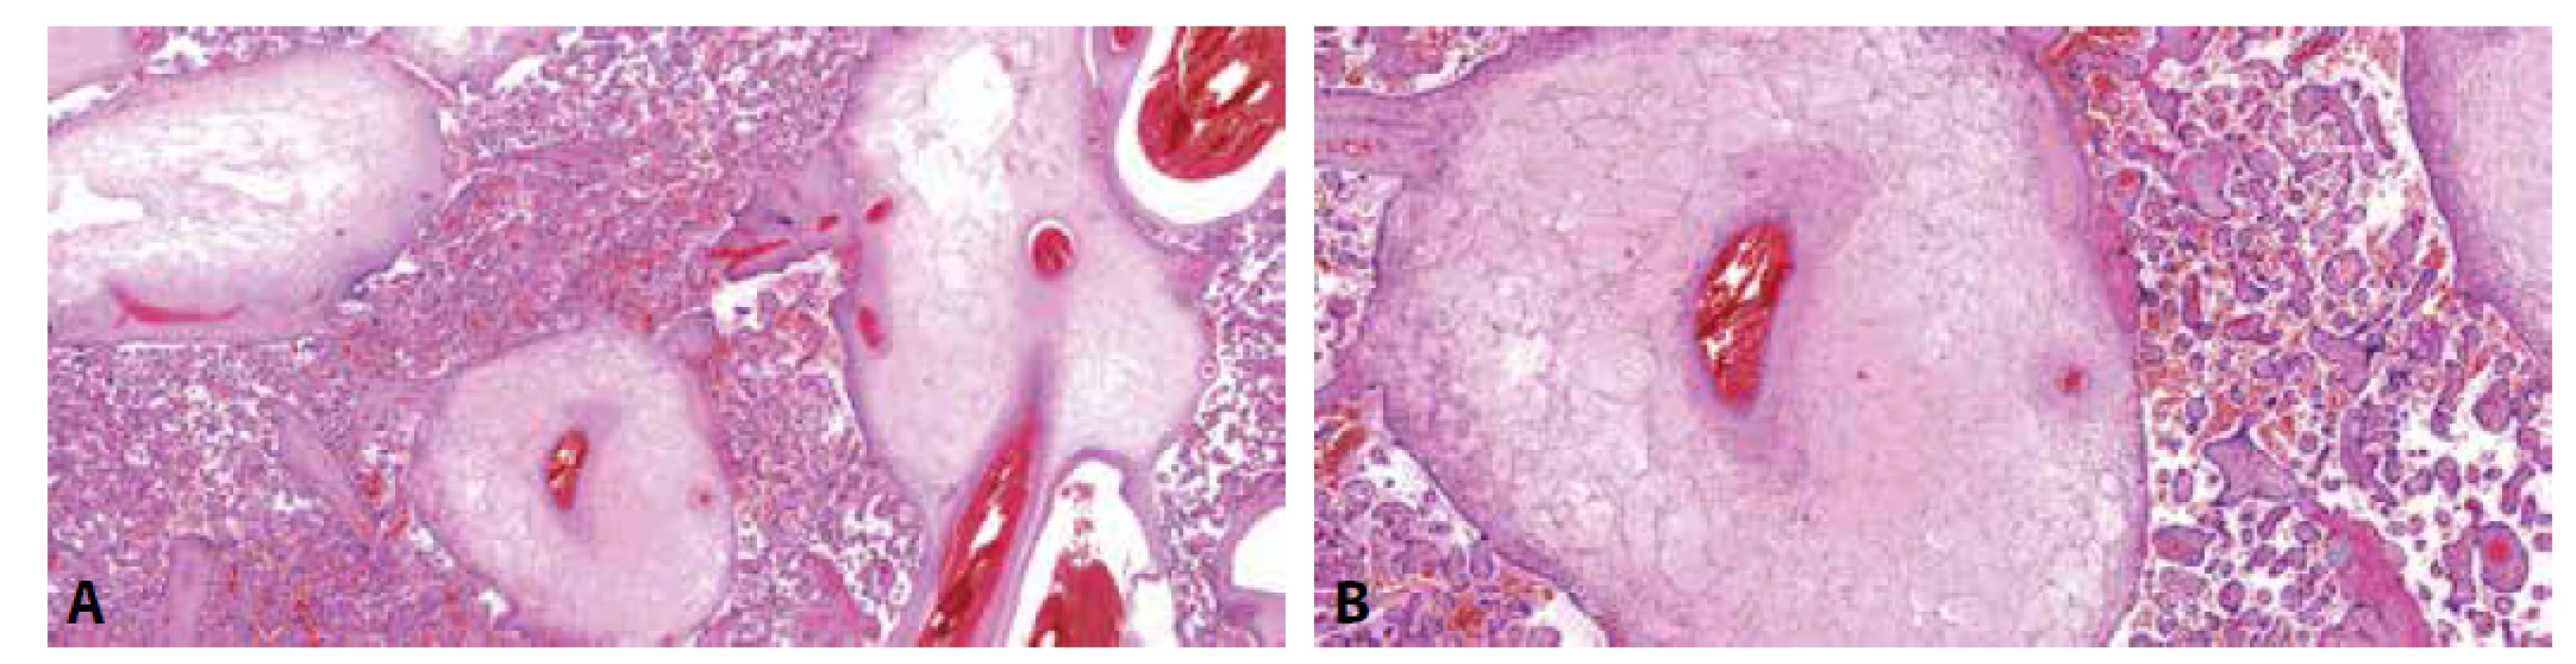 PMD. A: Edématózní kmenové klky bez hyperplázie vilózního trofoblastu. Distální choriové klky bez
signifikantních změn (HE, 50x). B: PMD. Kmenový klk s edémem stromatu a silnostěnnými cévami (HE, 100x).